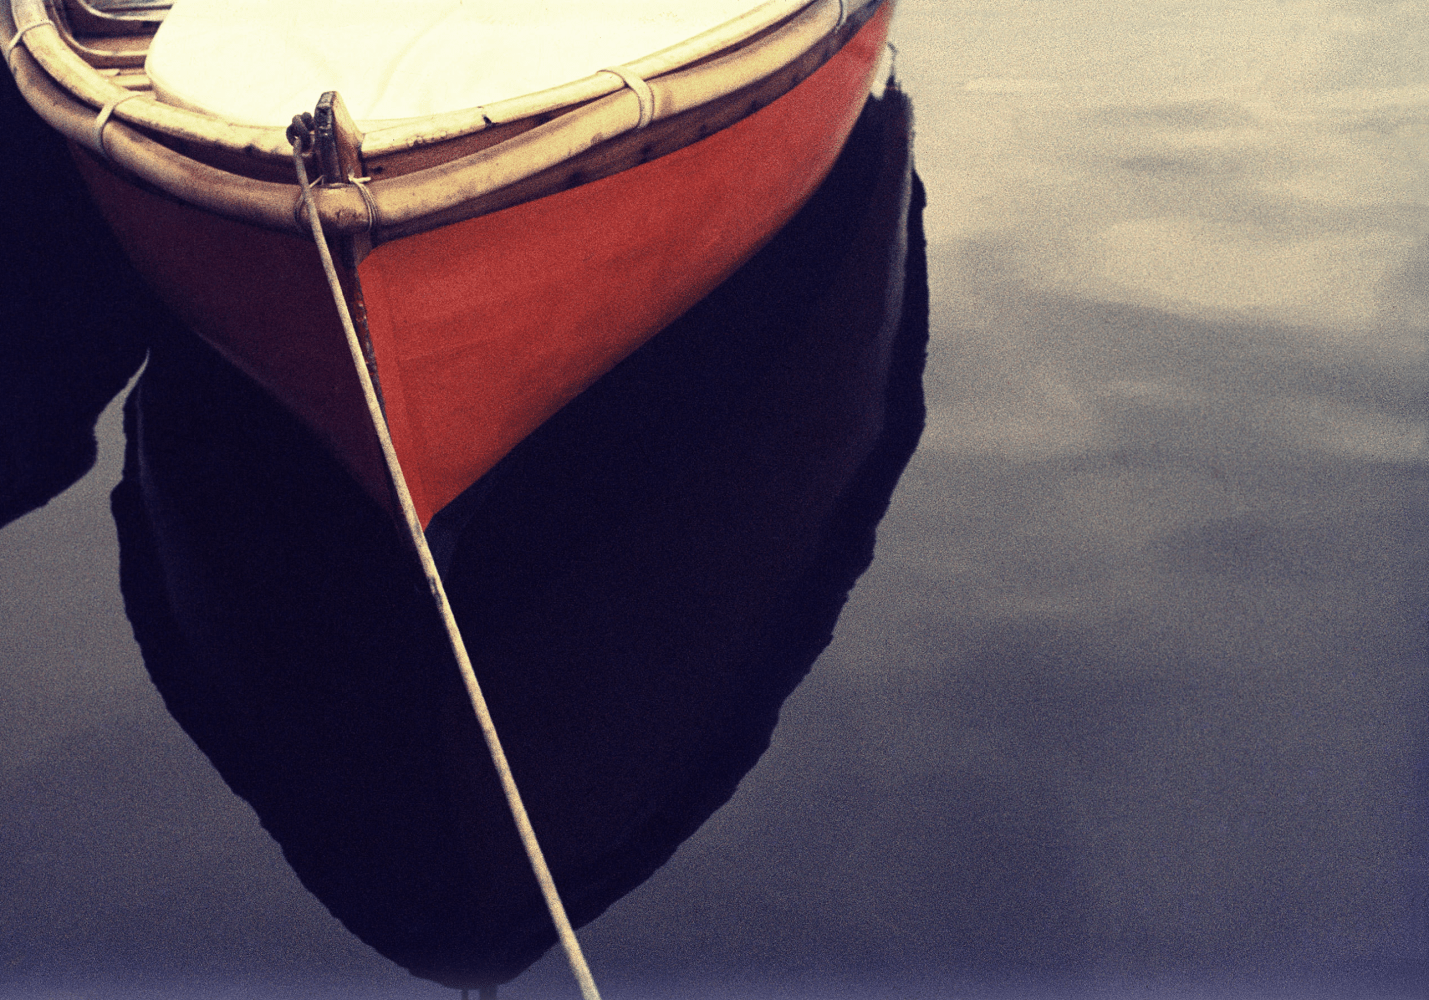 Robert Farber, Red Boat, Portofino, Italy, 1984